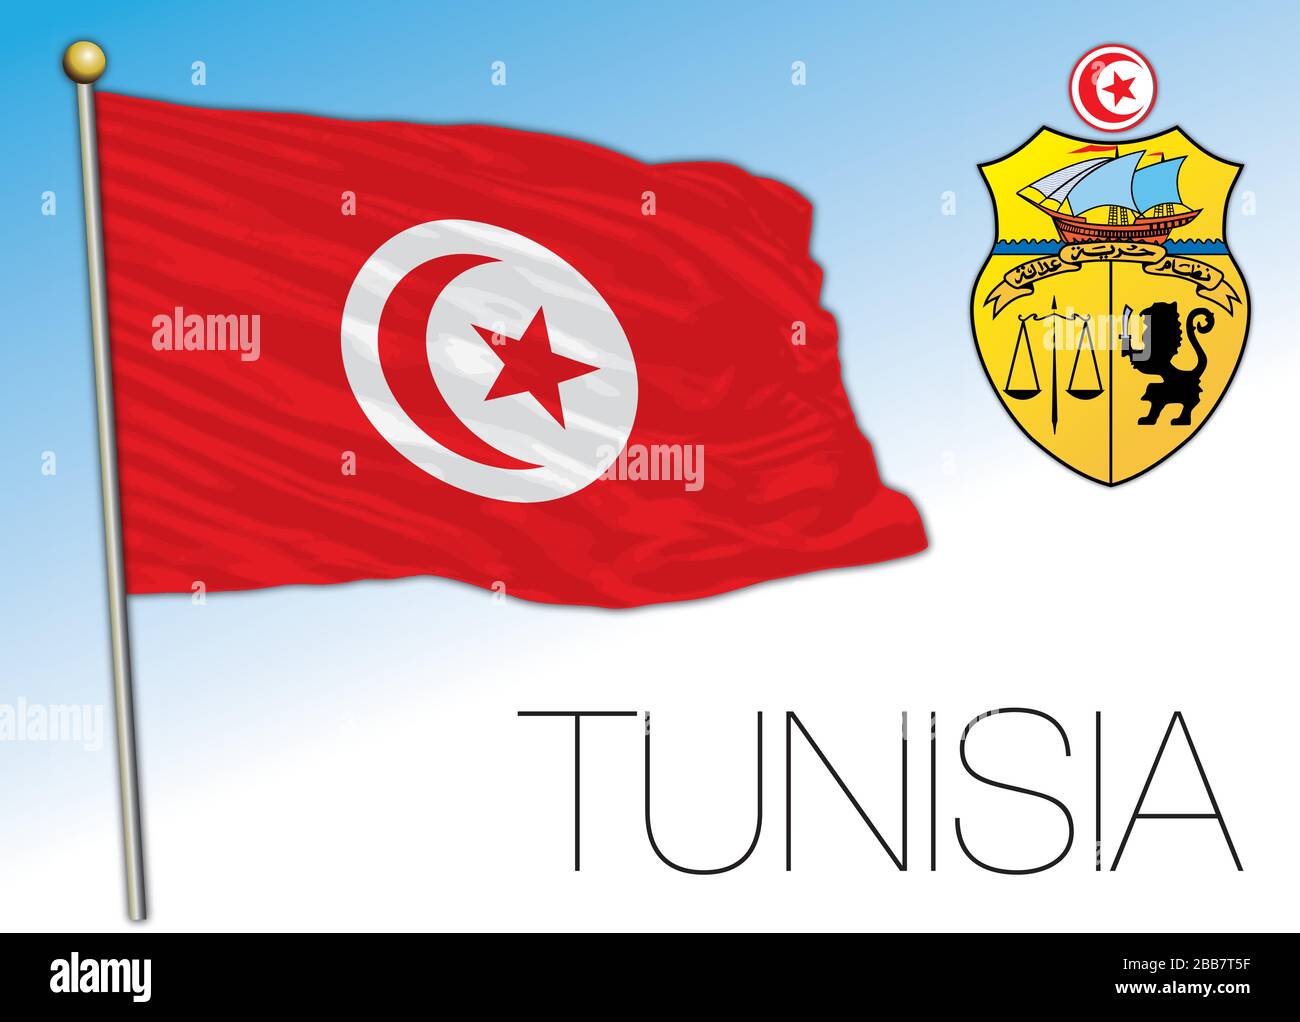 Tunisie drapeau national officiel et armoiries, pays africain, illustration  vectorielle Image Vectorielle Stock - Alamy